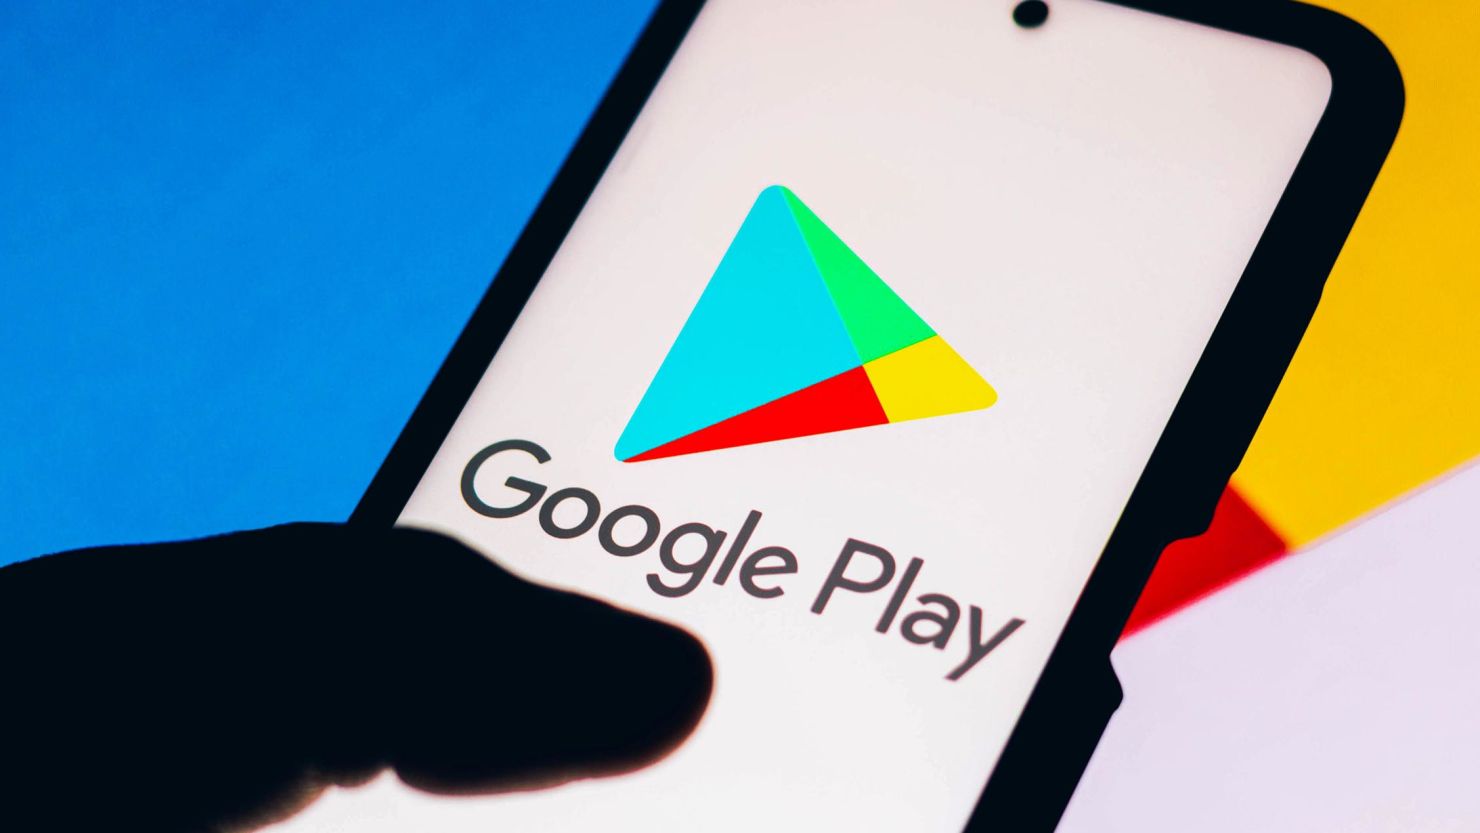 Google Play introduce una nueva función para identificar las aplicaciones gubernamentales oficiales